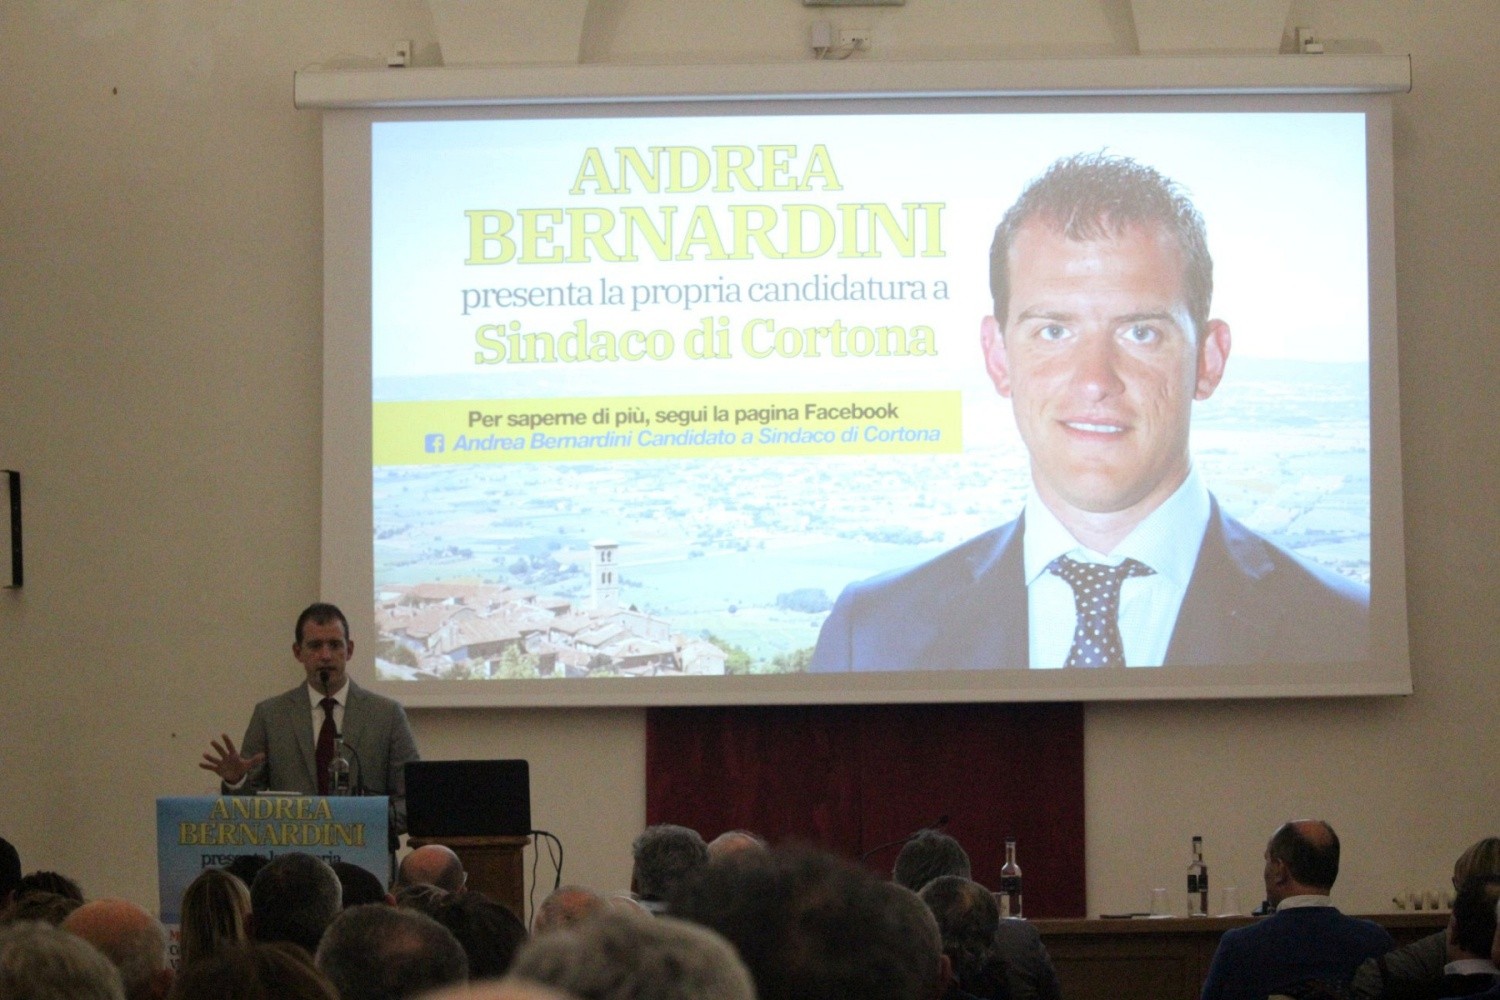 Centro Sant’Agostino gremito per la presentazione del candidato a Sindaco di Cortona Andrea Bernardini